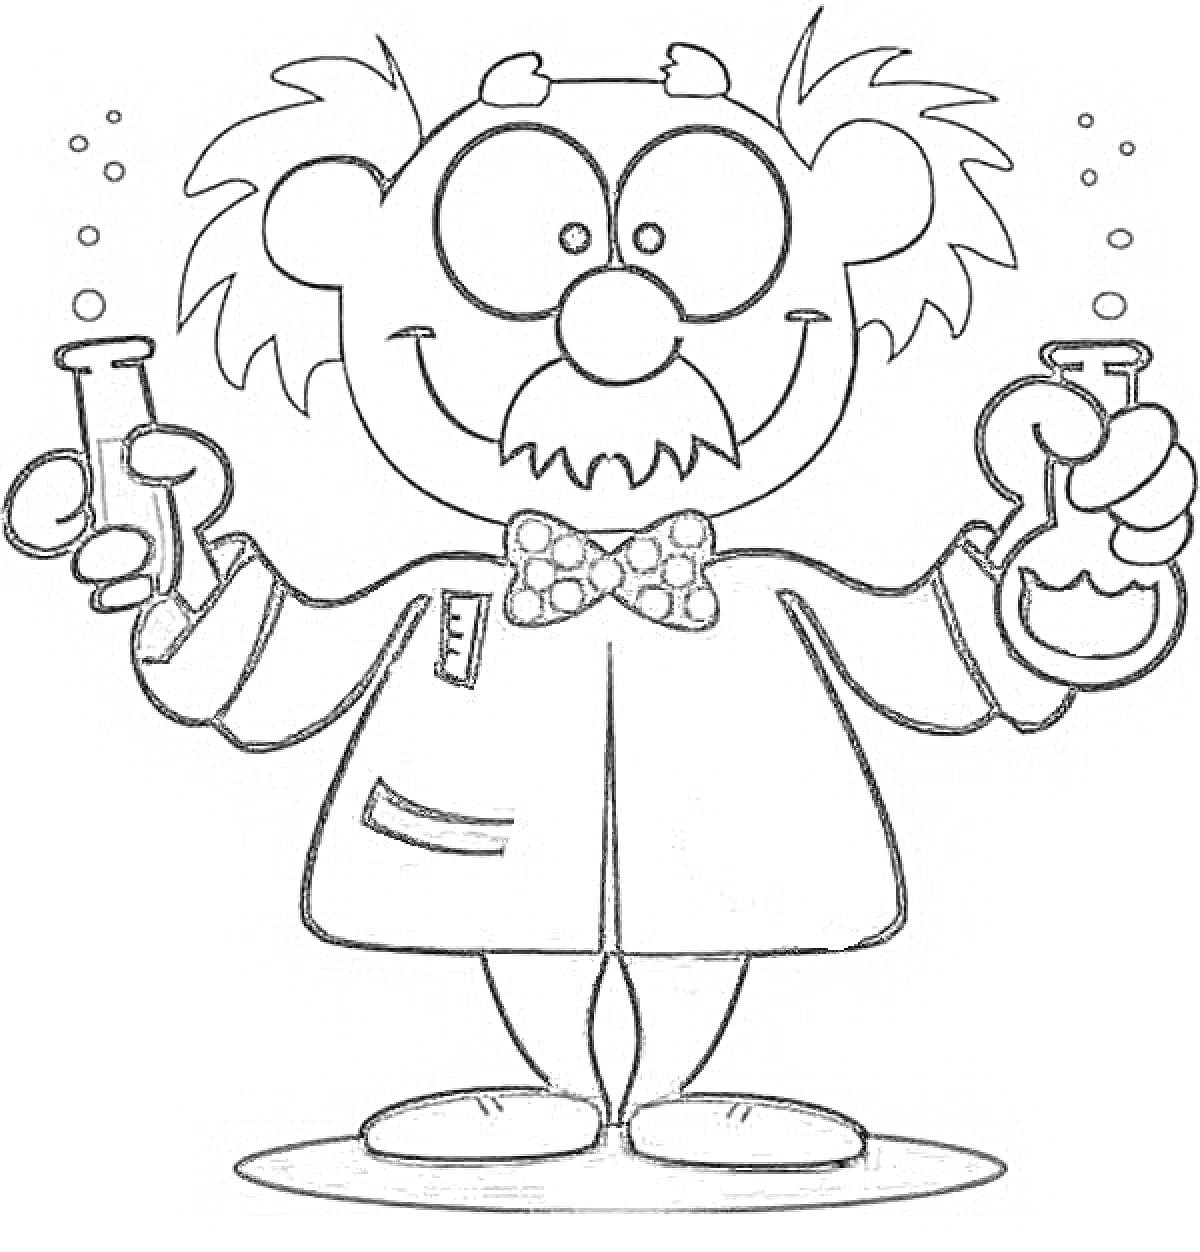 Раскраска Профессор с пробирками, держащий две колбы, одна из них наполнена жидкостью, в очках и с сумасшедшими волосами